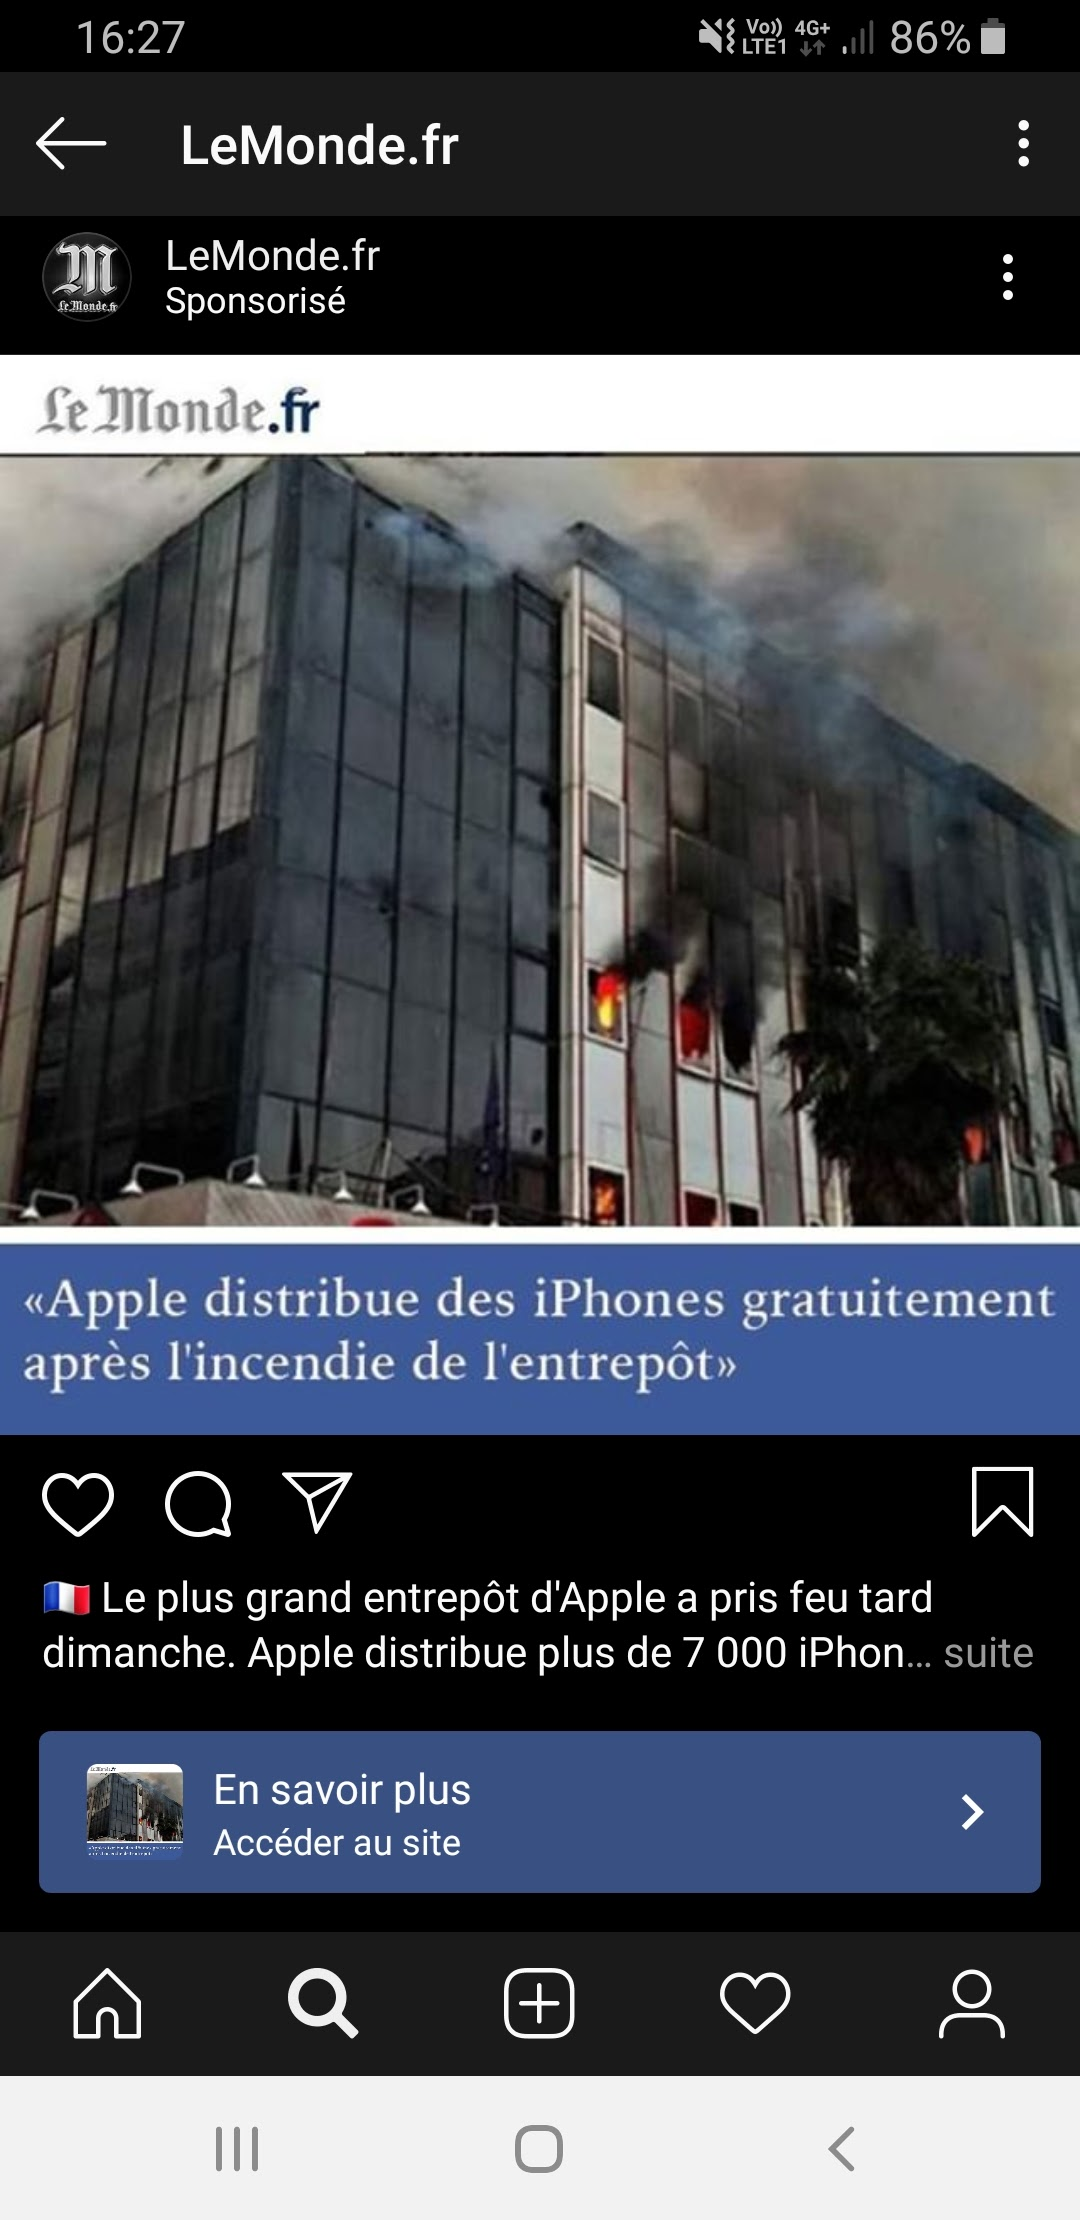 Capture d'écran Instagram du 18 octobre 2019 utilisant le nom LeMonde.fr pour cette arnaque